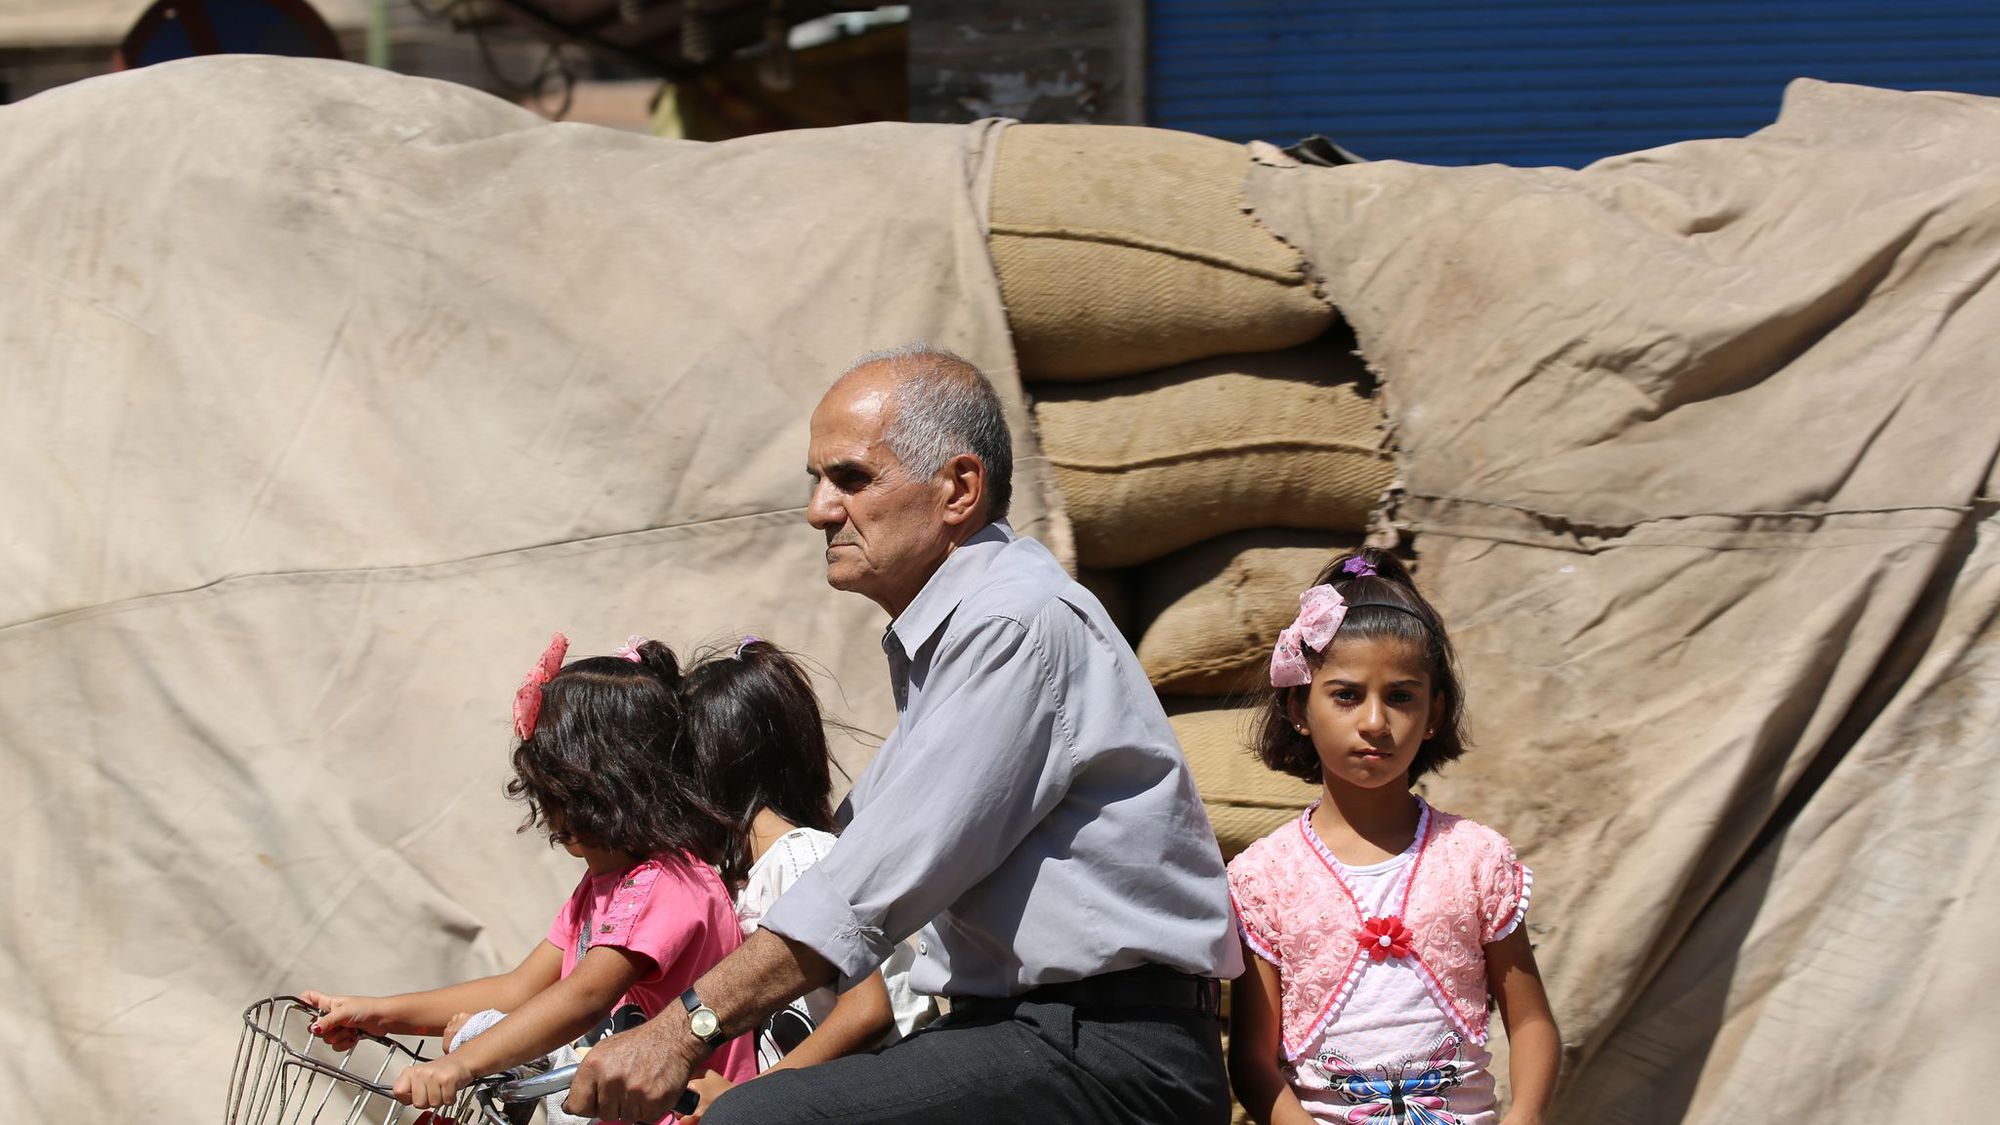 Trêve en Syrie: la violence baisse mais l'aide humanitaire est absente